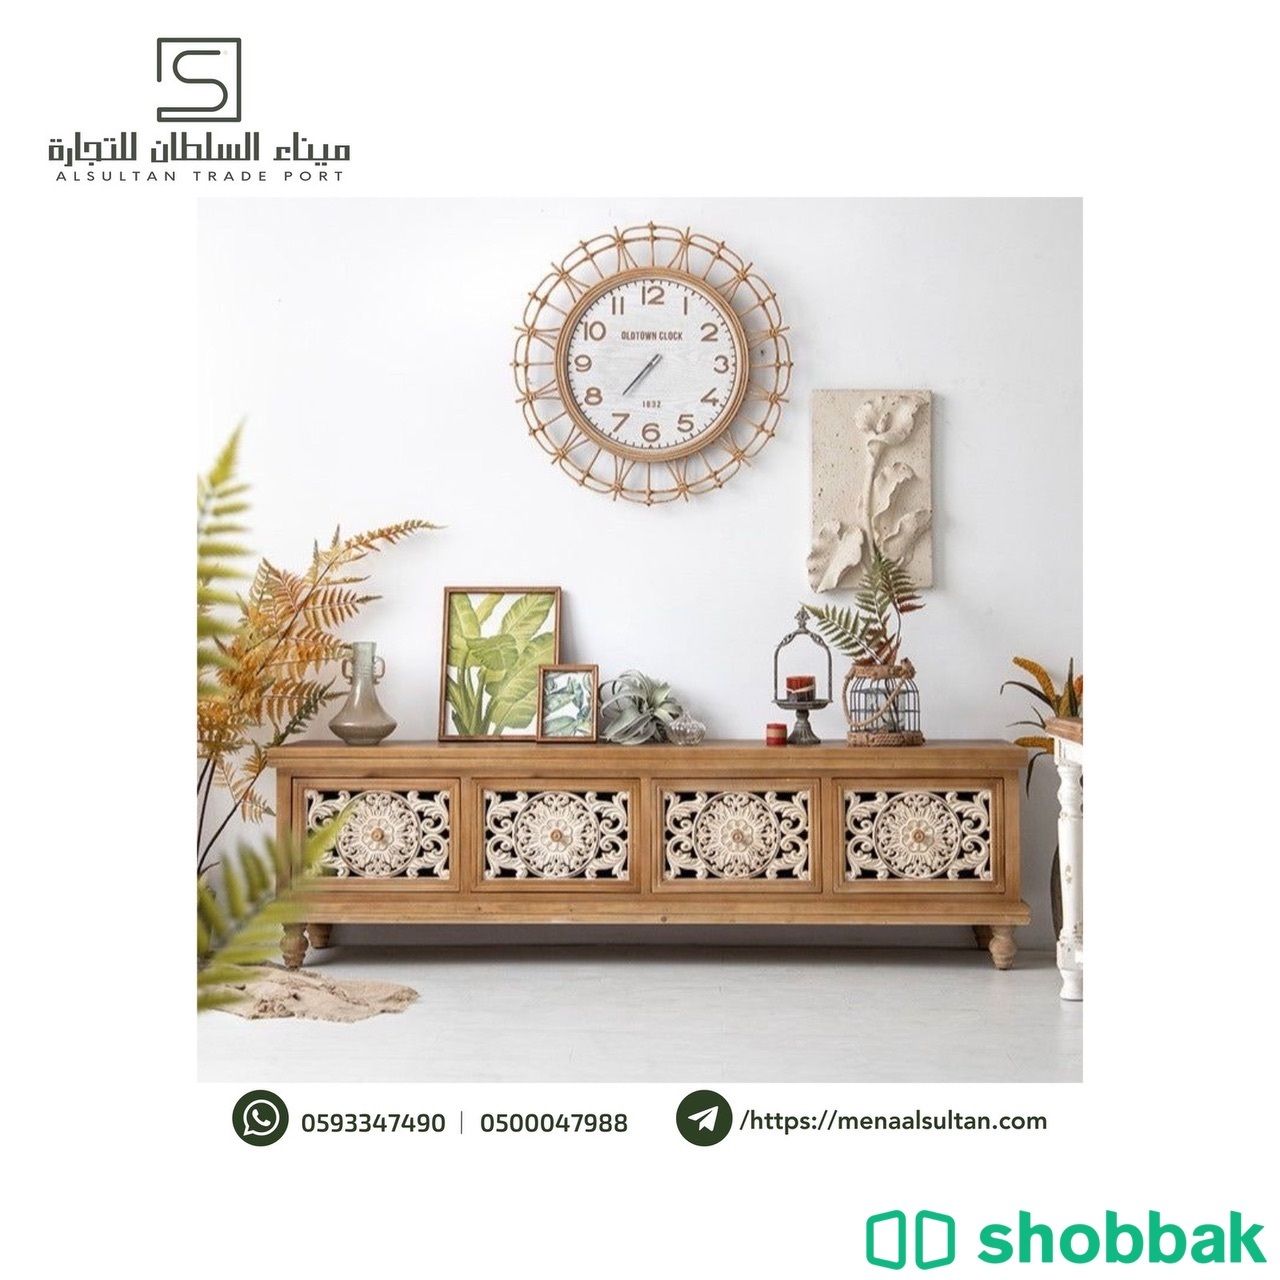 طاولة بلازما خشب ادراج كلاسيك Shobbak Saudi Arabia